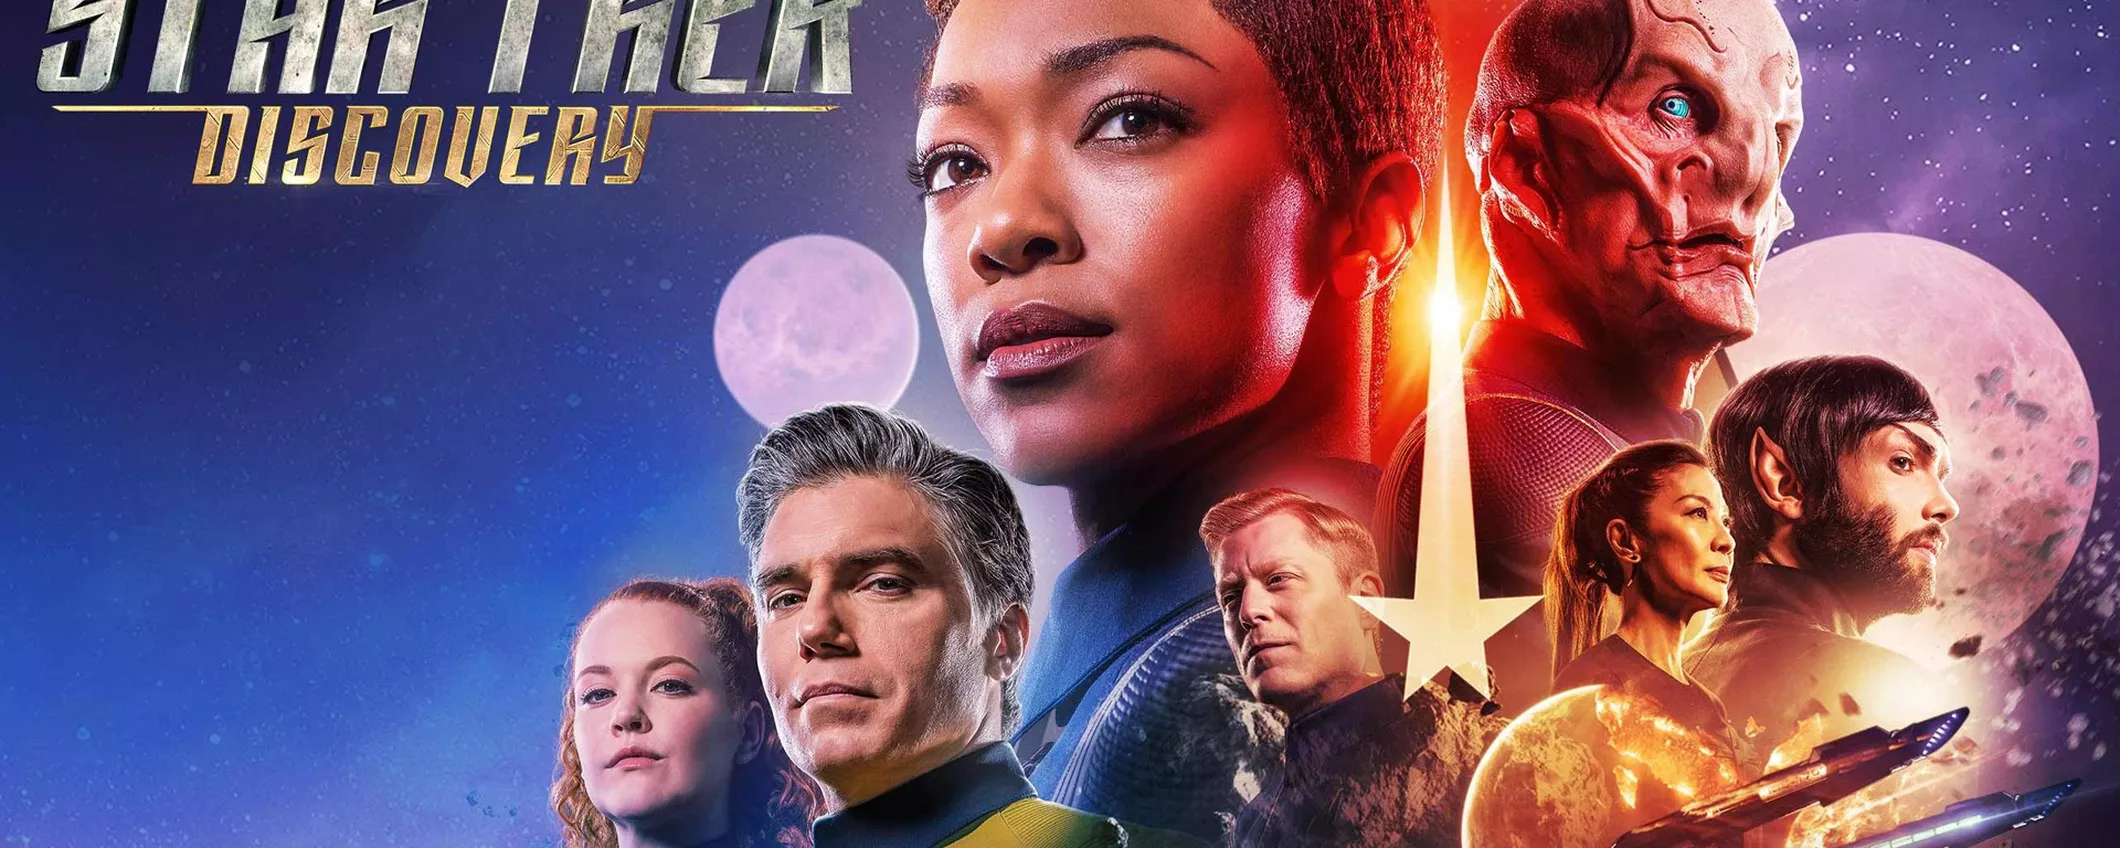 Star Trek: Discovery 5 arriva in Italia, dove guardare tutti gli episodi in streaming